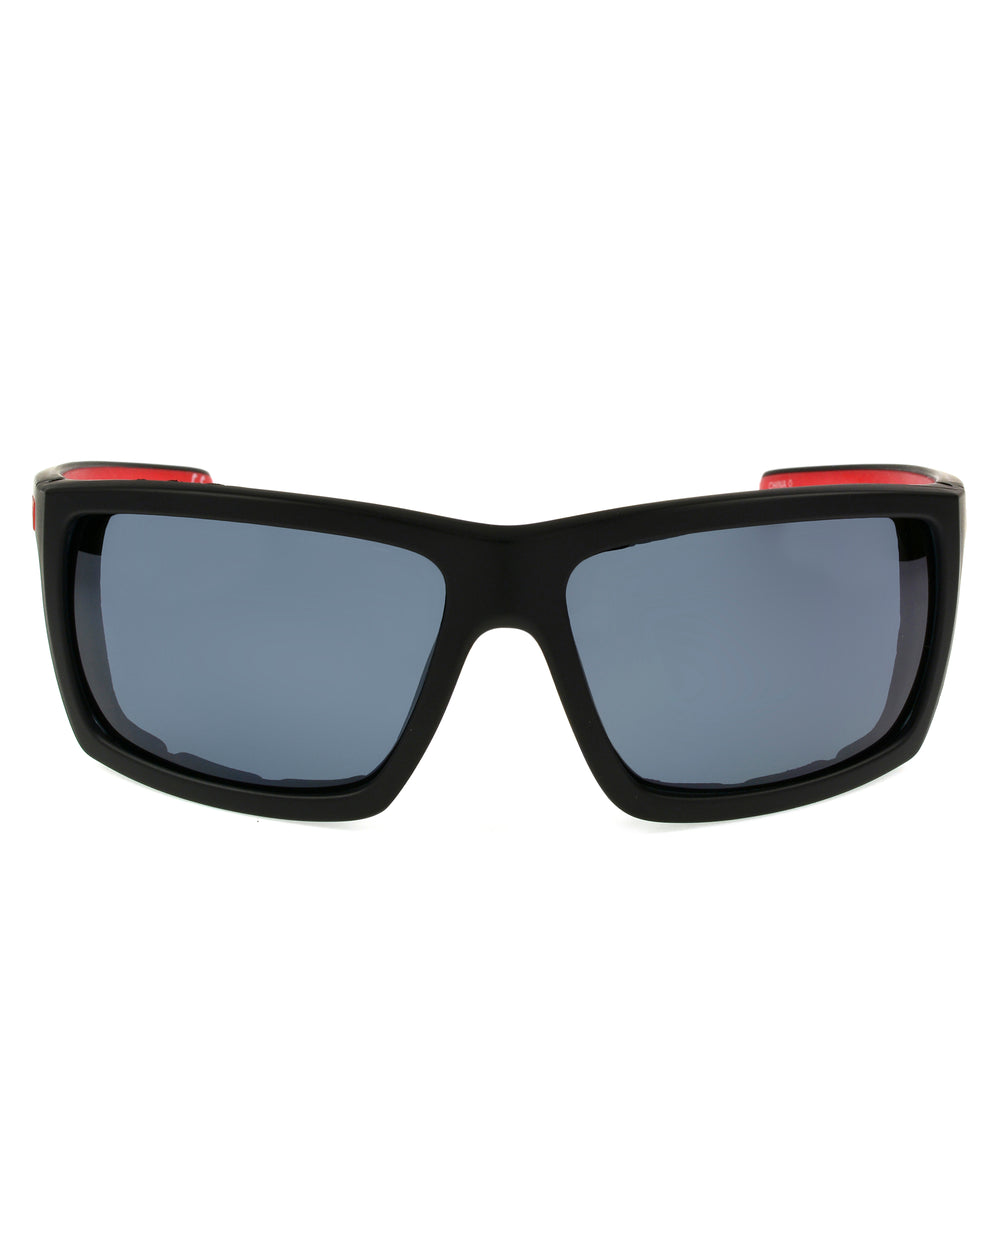 Men's Sayulita Polarized Sunglasses - Black/Red - Body Glove